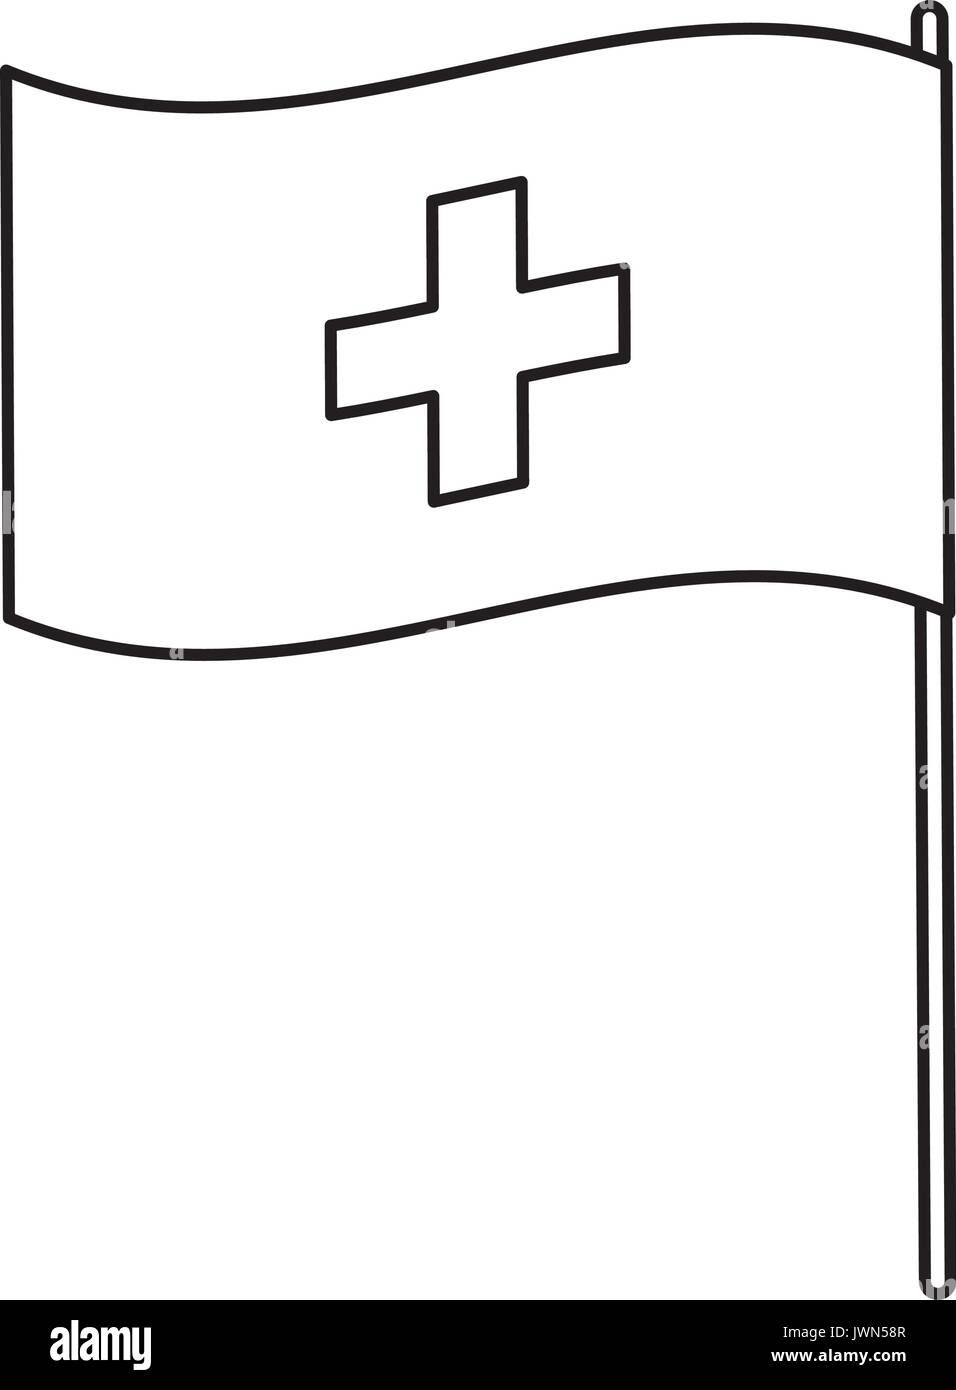 Flagge der Schweiz genaue Abmessungen element Proportionen  Stock-Vektorgrafik - Alamy